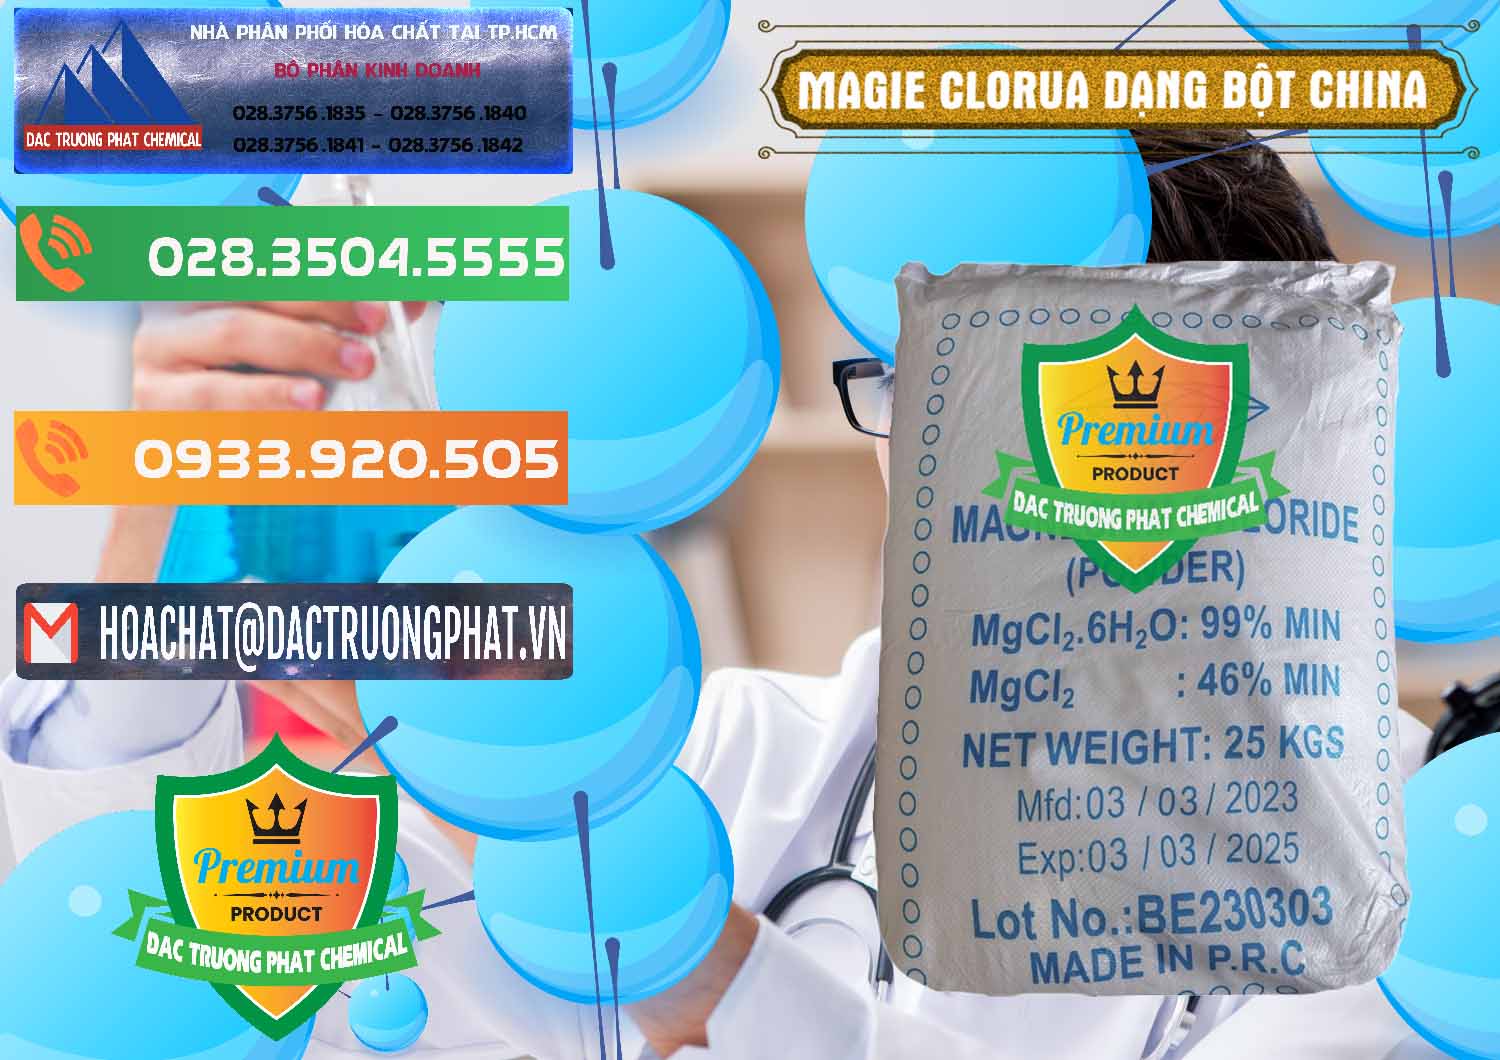 Cty chuyên cung cấp _ bán Magie Clorua – MGCL2 96% Dạng Bột Logo Kim Cương Trung Quốc China - 0387 - Đơn vị kinh doanh & phân phối hóa chất tại TP.HCM - hoachatxulynuoc.com.vn